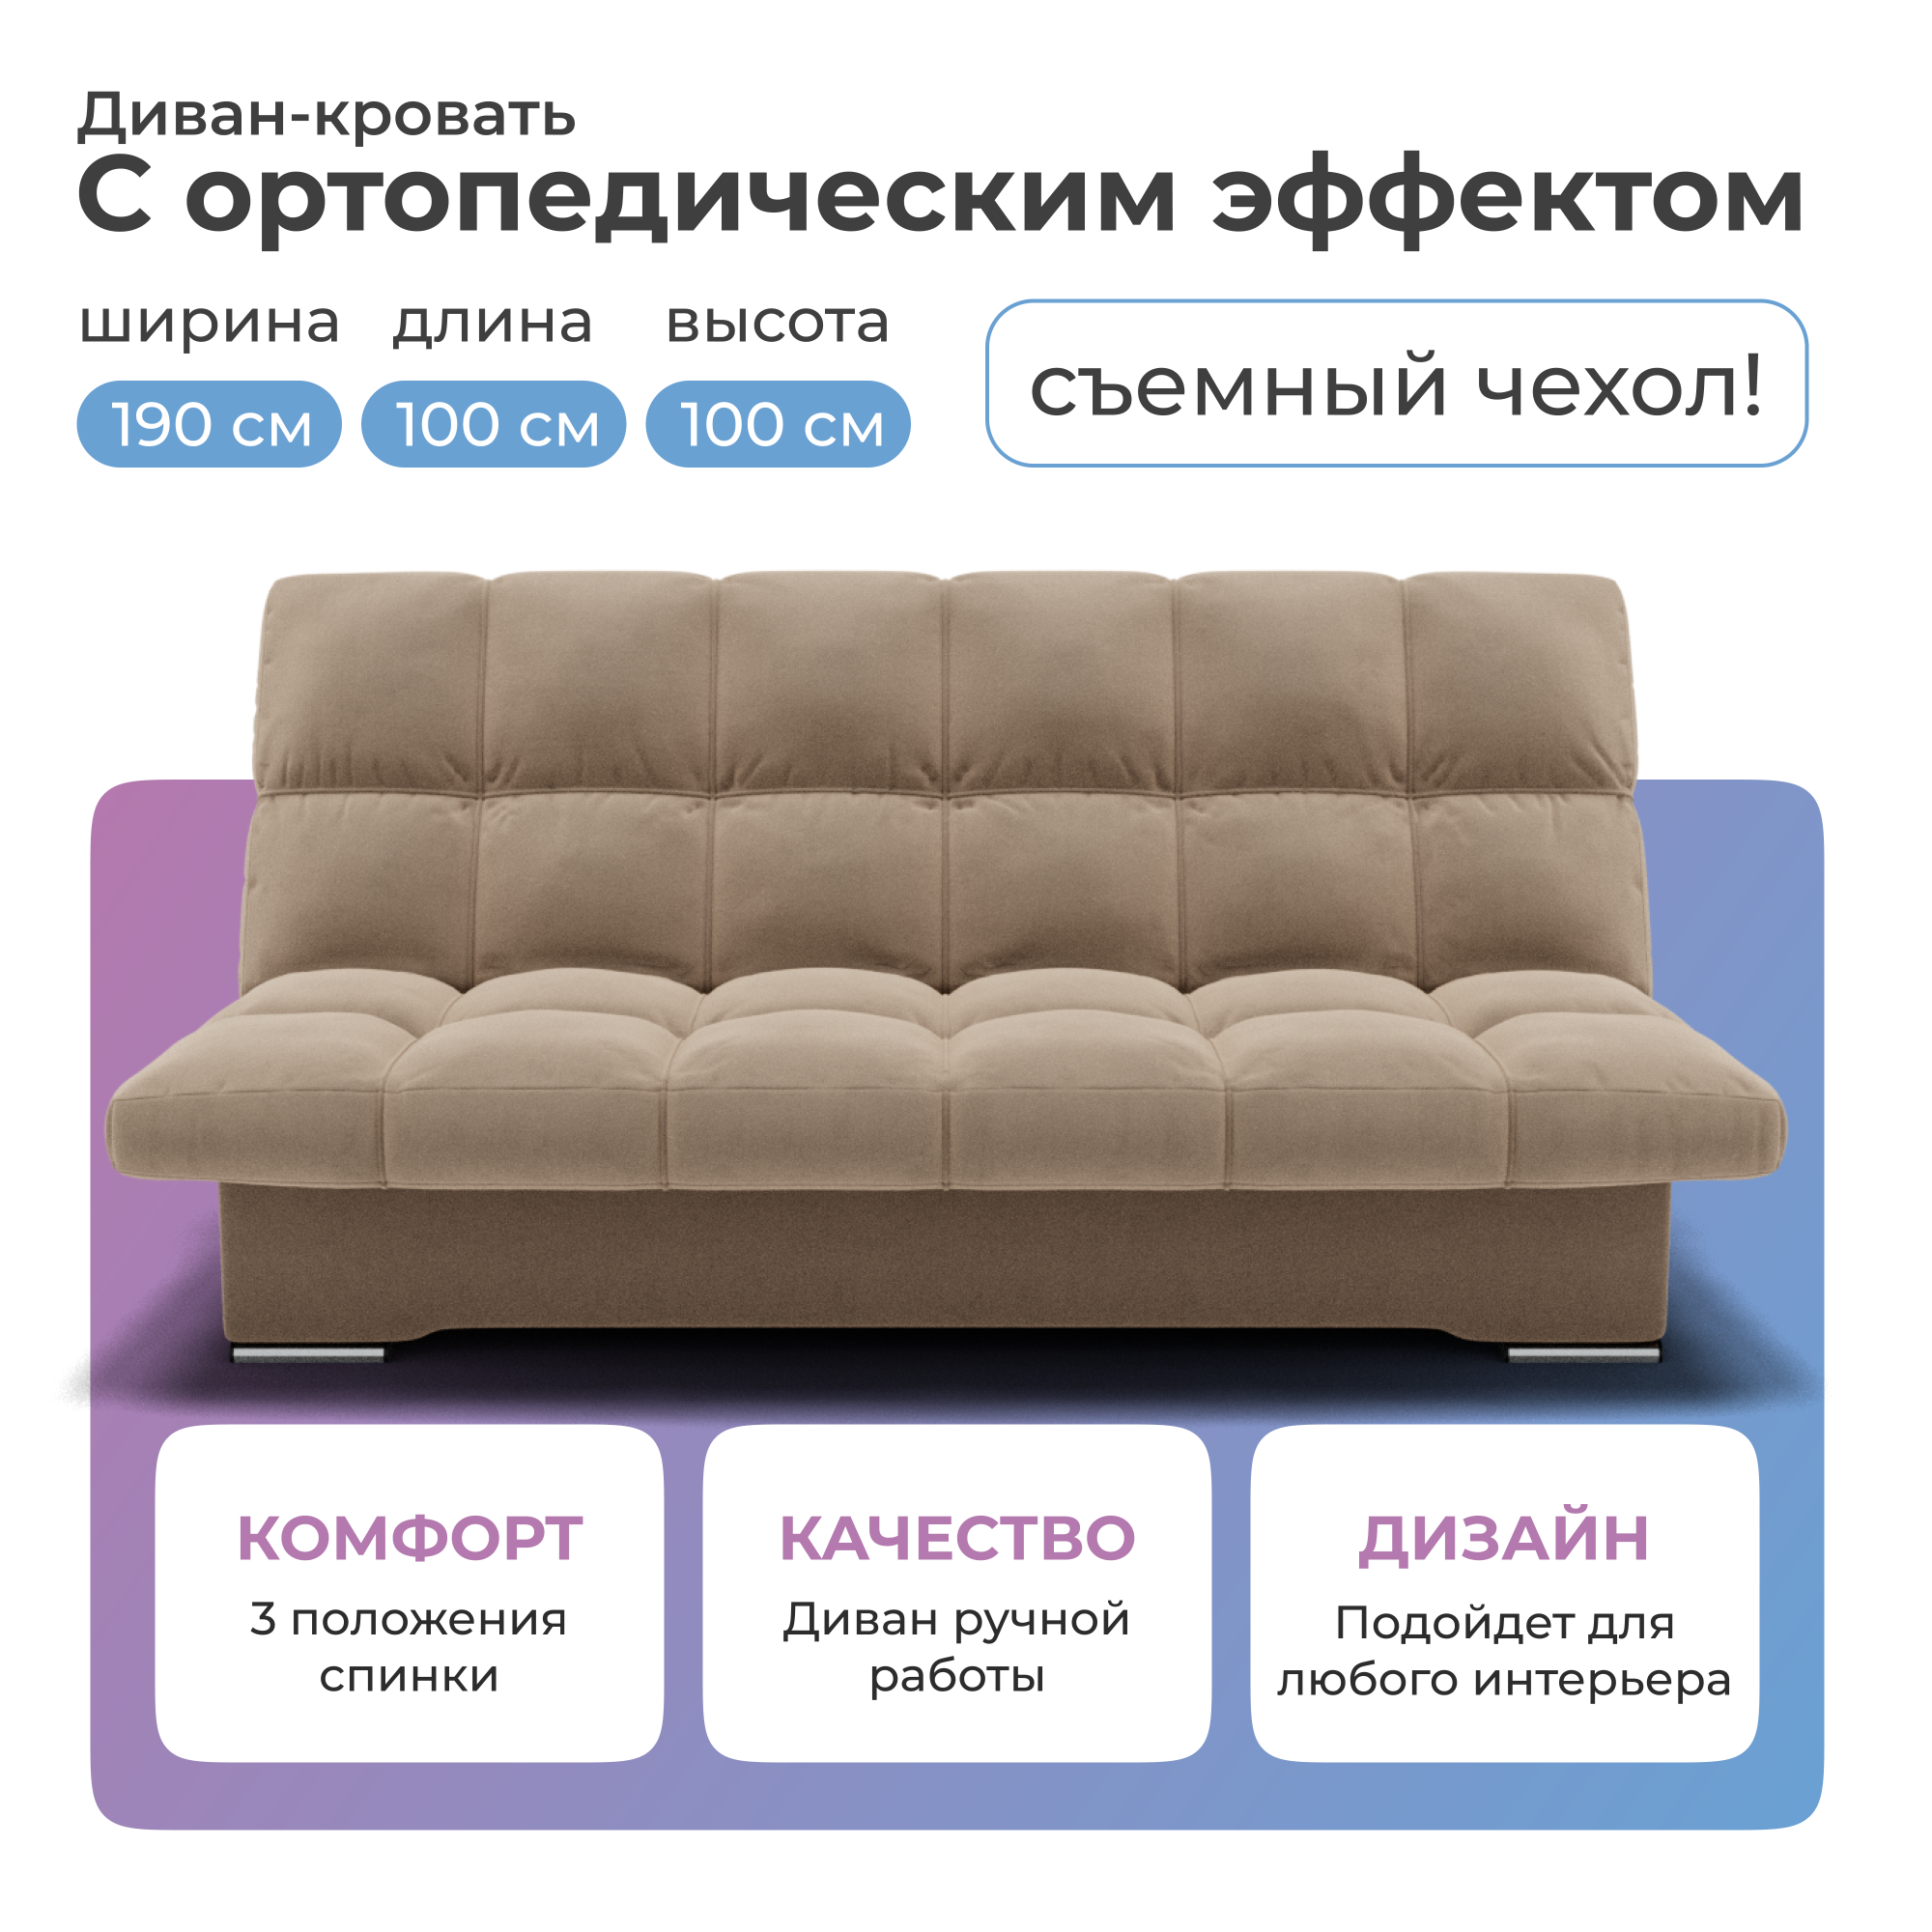 Диван-кровать Yorcom Финка Велюта 07, 190х100х100 см - купить в Москве, цены на Мегамаркет | 600017037529